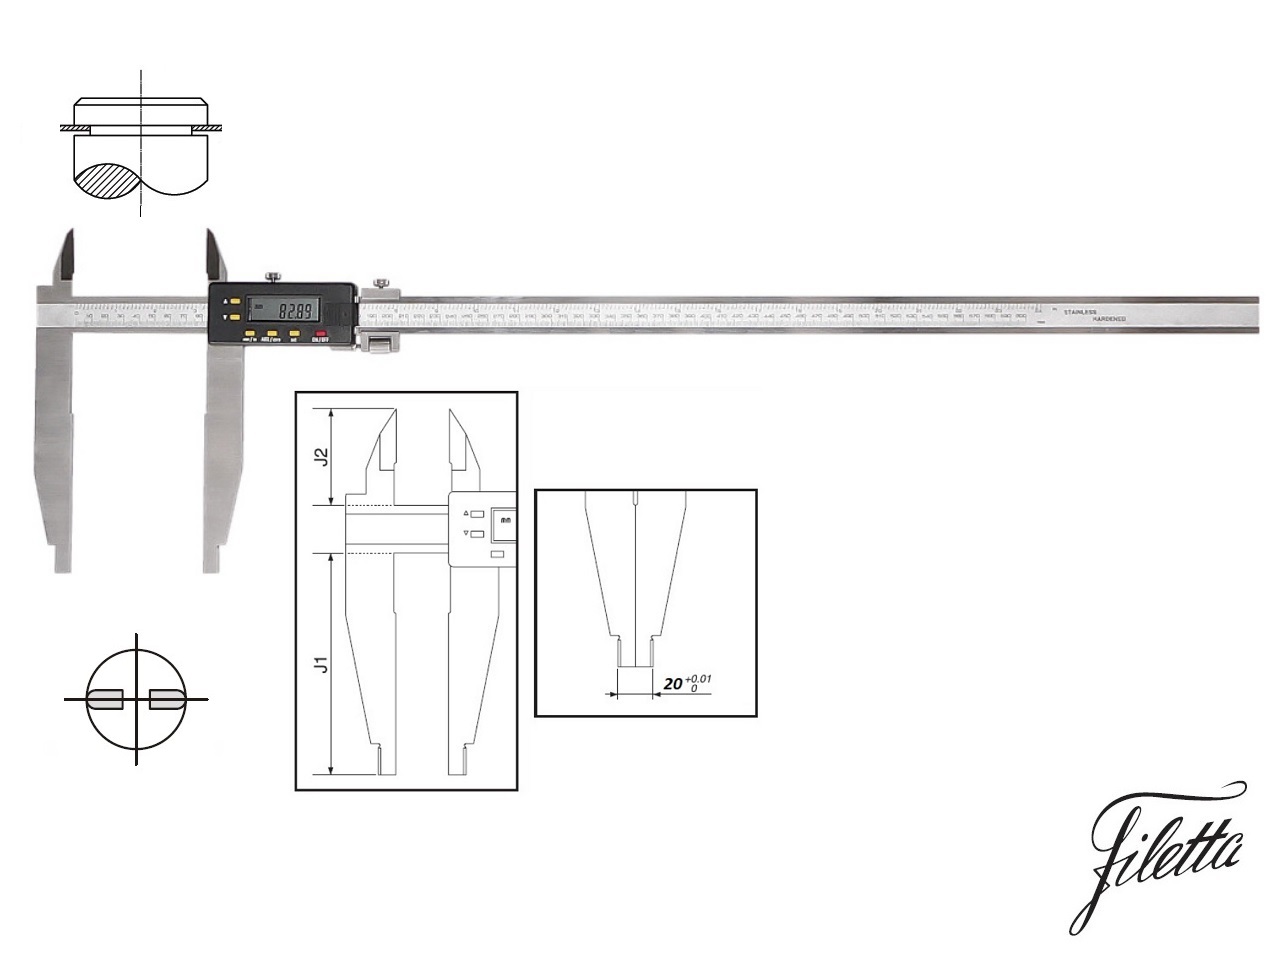 Digitální posuvné měřítko Filetta 0-300 mm s měřicími nožíky pro vnější měření